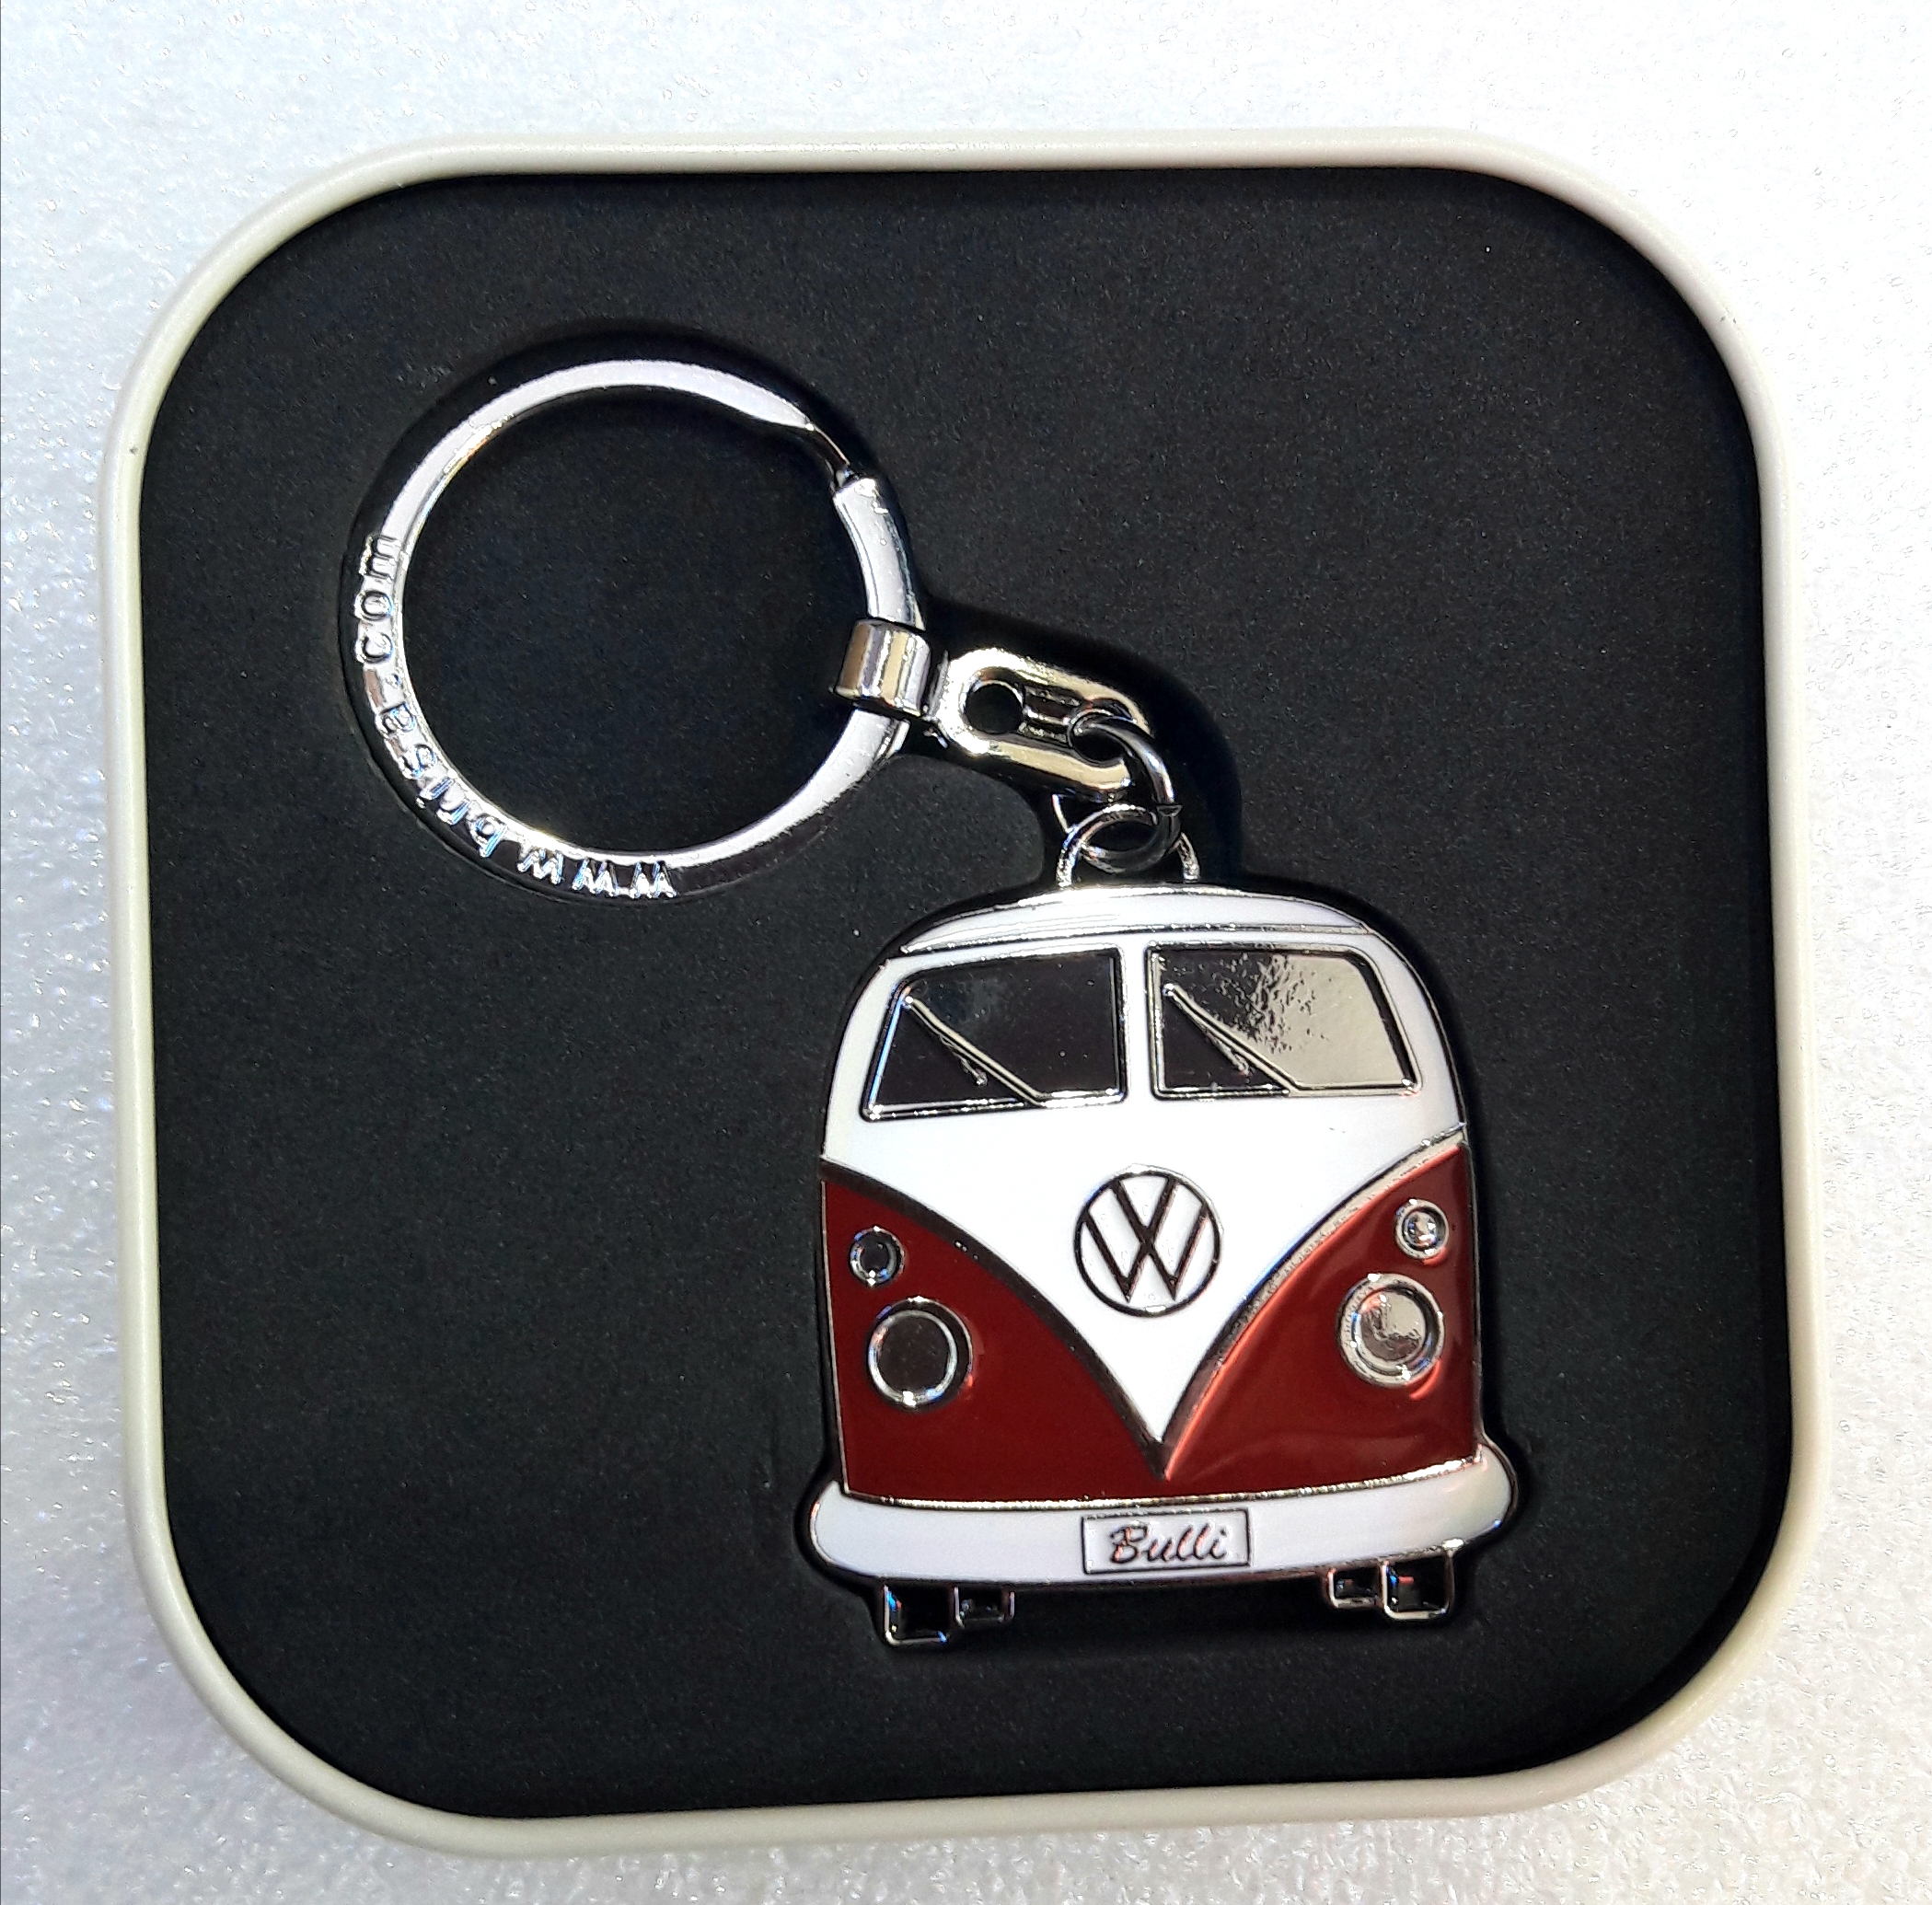 Porte clés Volkswagen